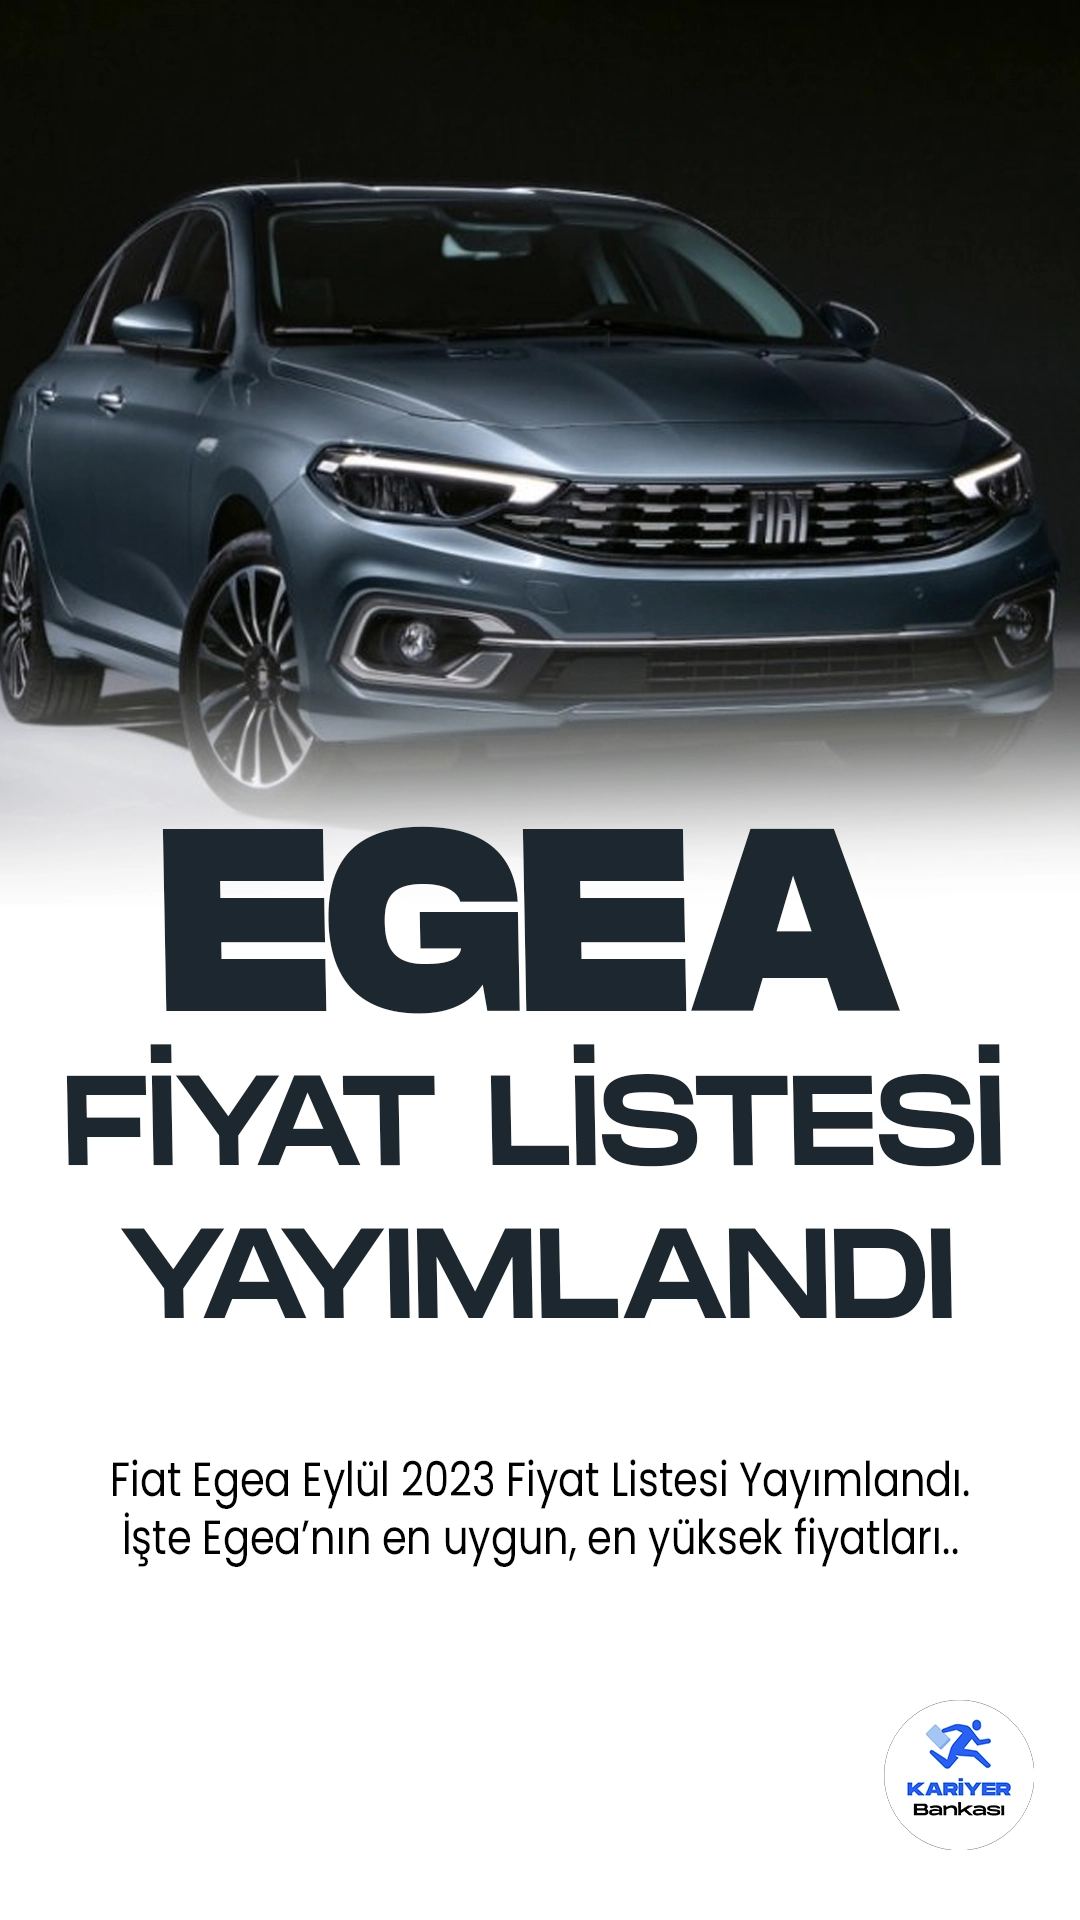 Fiat Egea Eylül 2023 Fiyat Listesi Yayımlandı.Fiat Egea, Türkiye'de üretilen ve dünya genelinde büyük bir ilgi gören bir otomobil modelidir. Hem şehir içi kullanıma uygun tasarımı hem de yakıt ekonomisiyle dikkat çekmektedir. Son modelde yapılan güncellemeler, daha modern bir görünüm ve gelişmiş teknolojiler sunmaktadır.